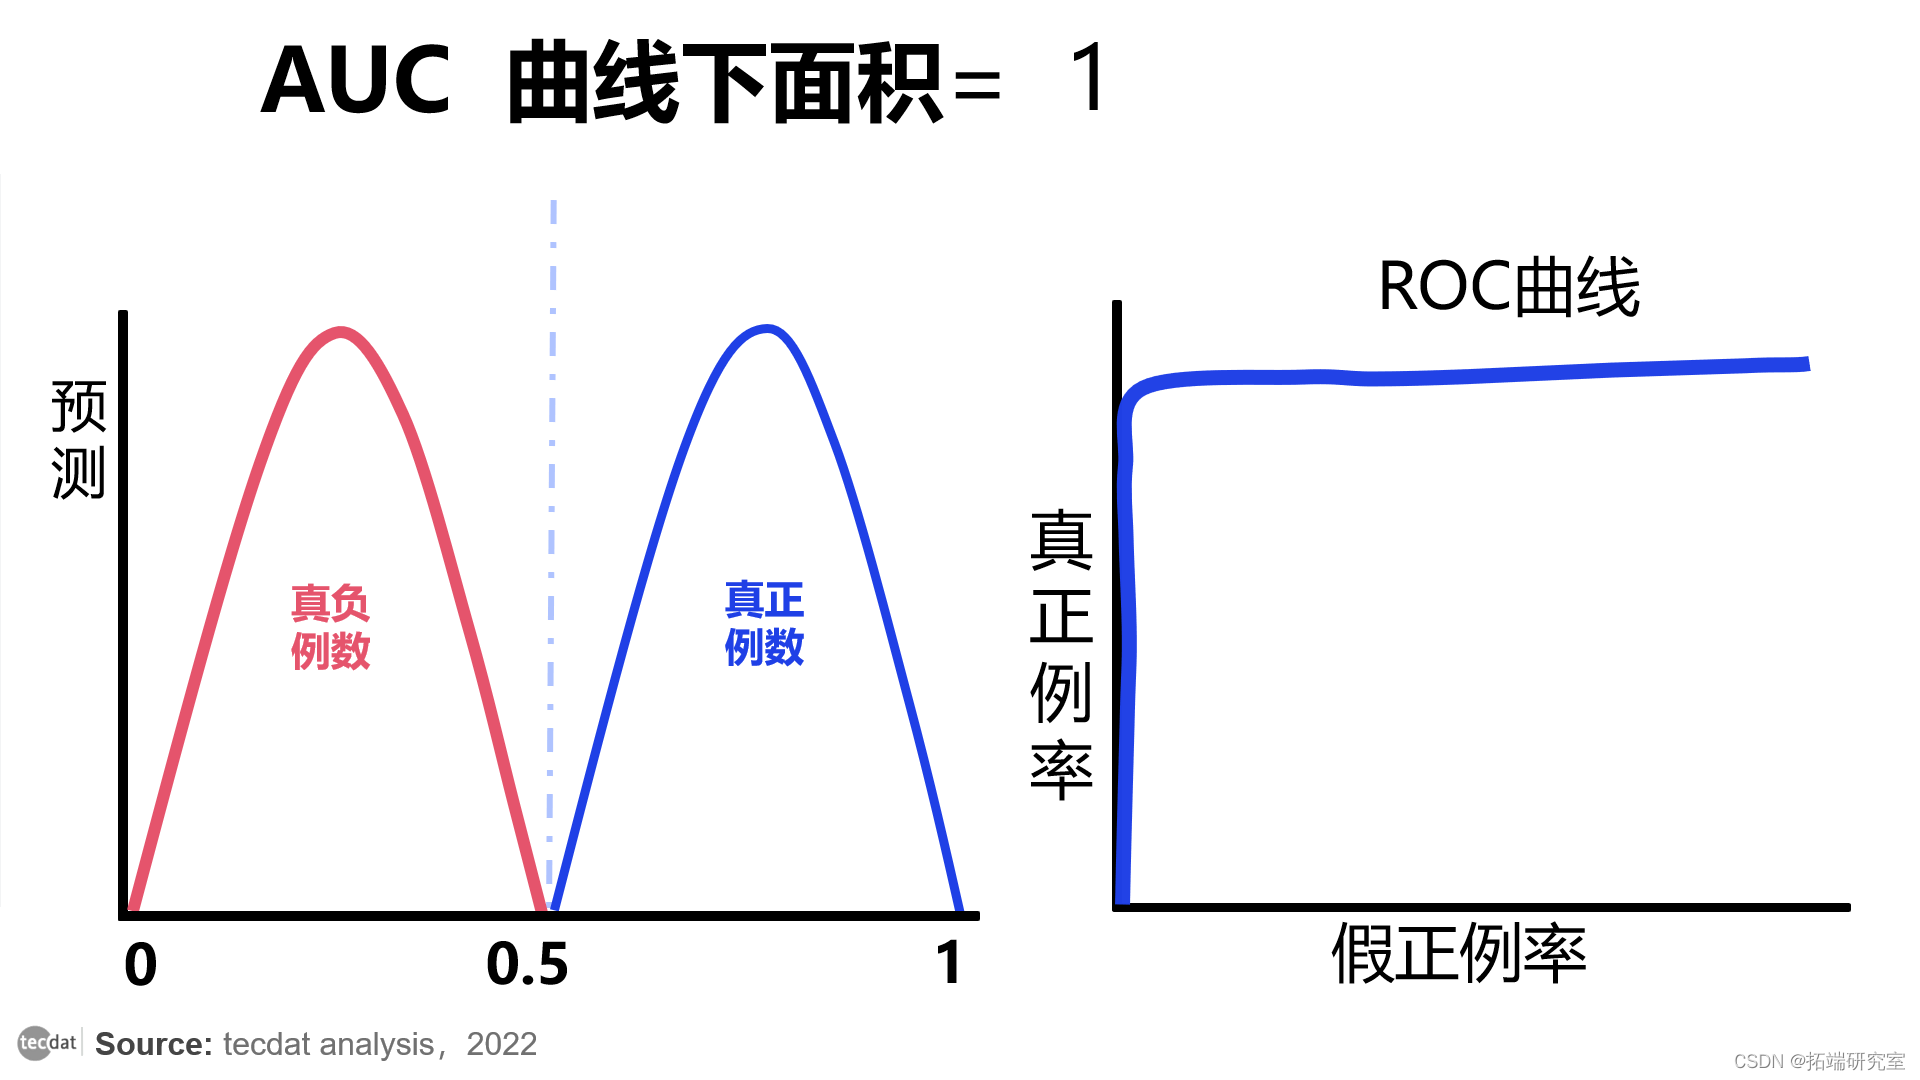 视频|分类模型评估:精确率、召回率、ROC曲线、AUC与R语言生存分析时间依赖性ROC实现|附代码数据_数据_07